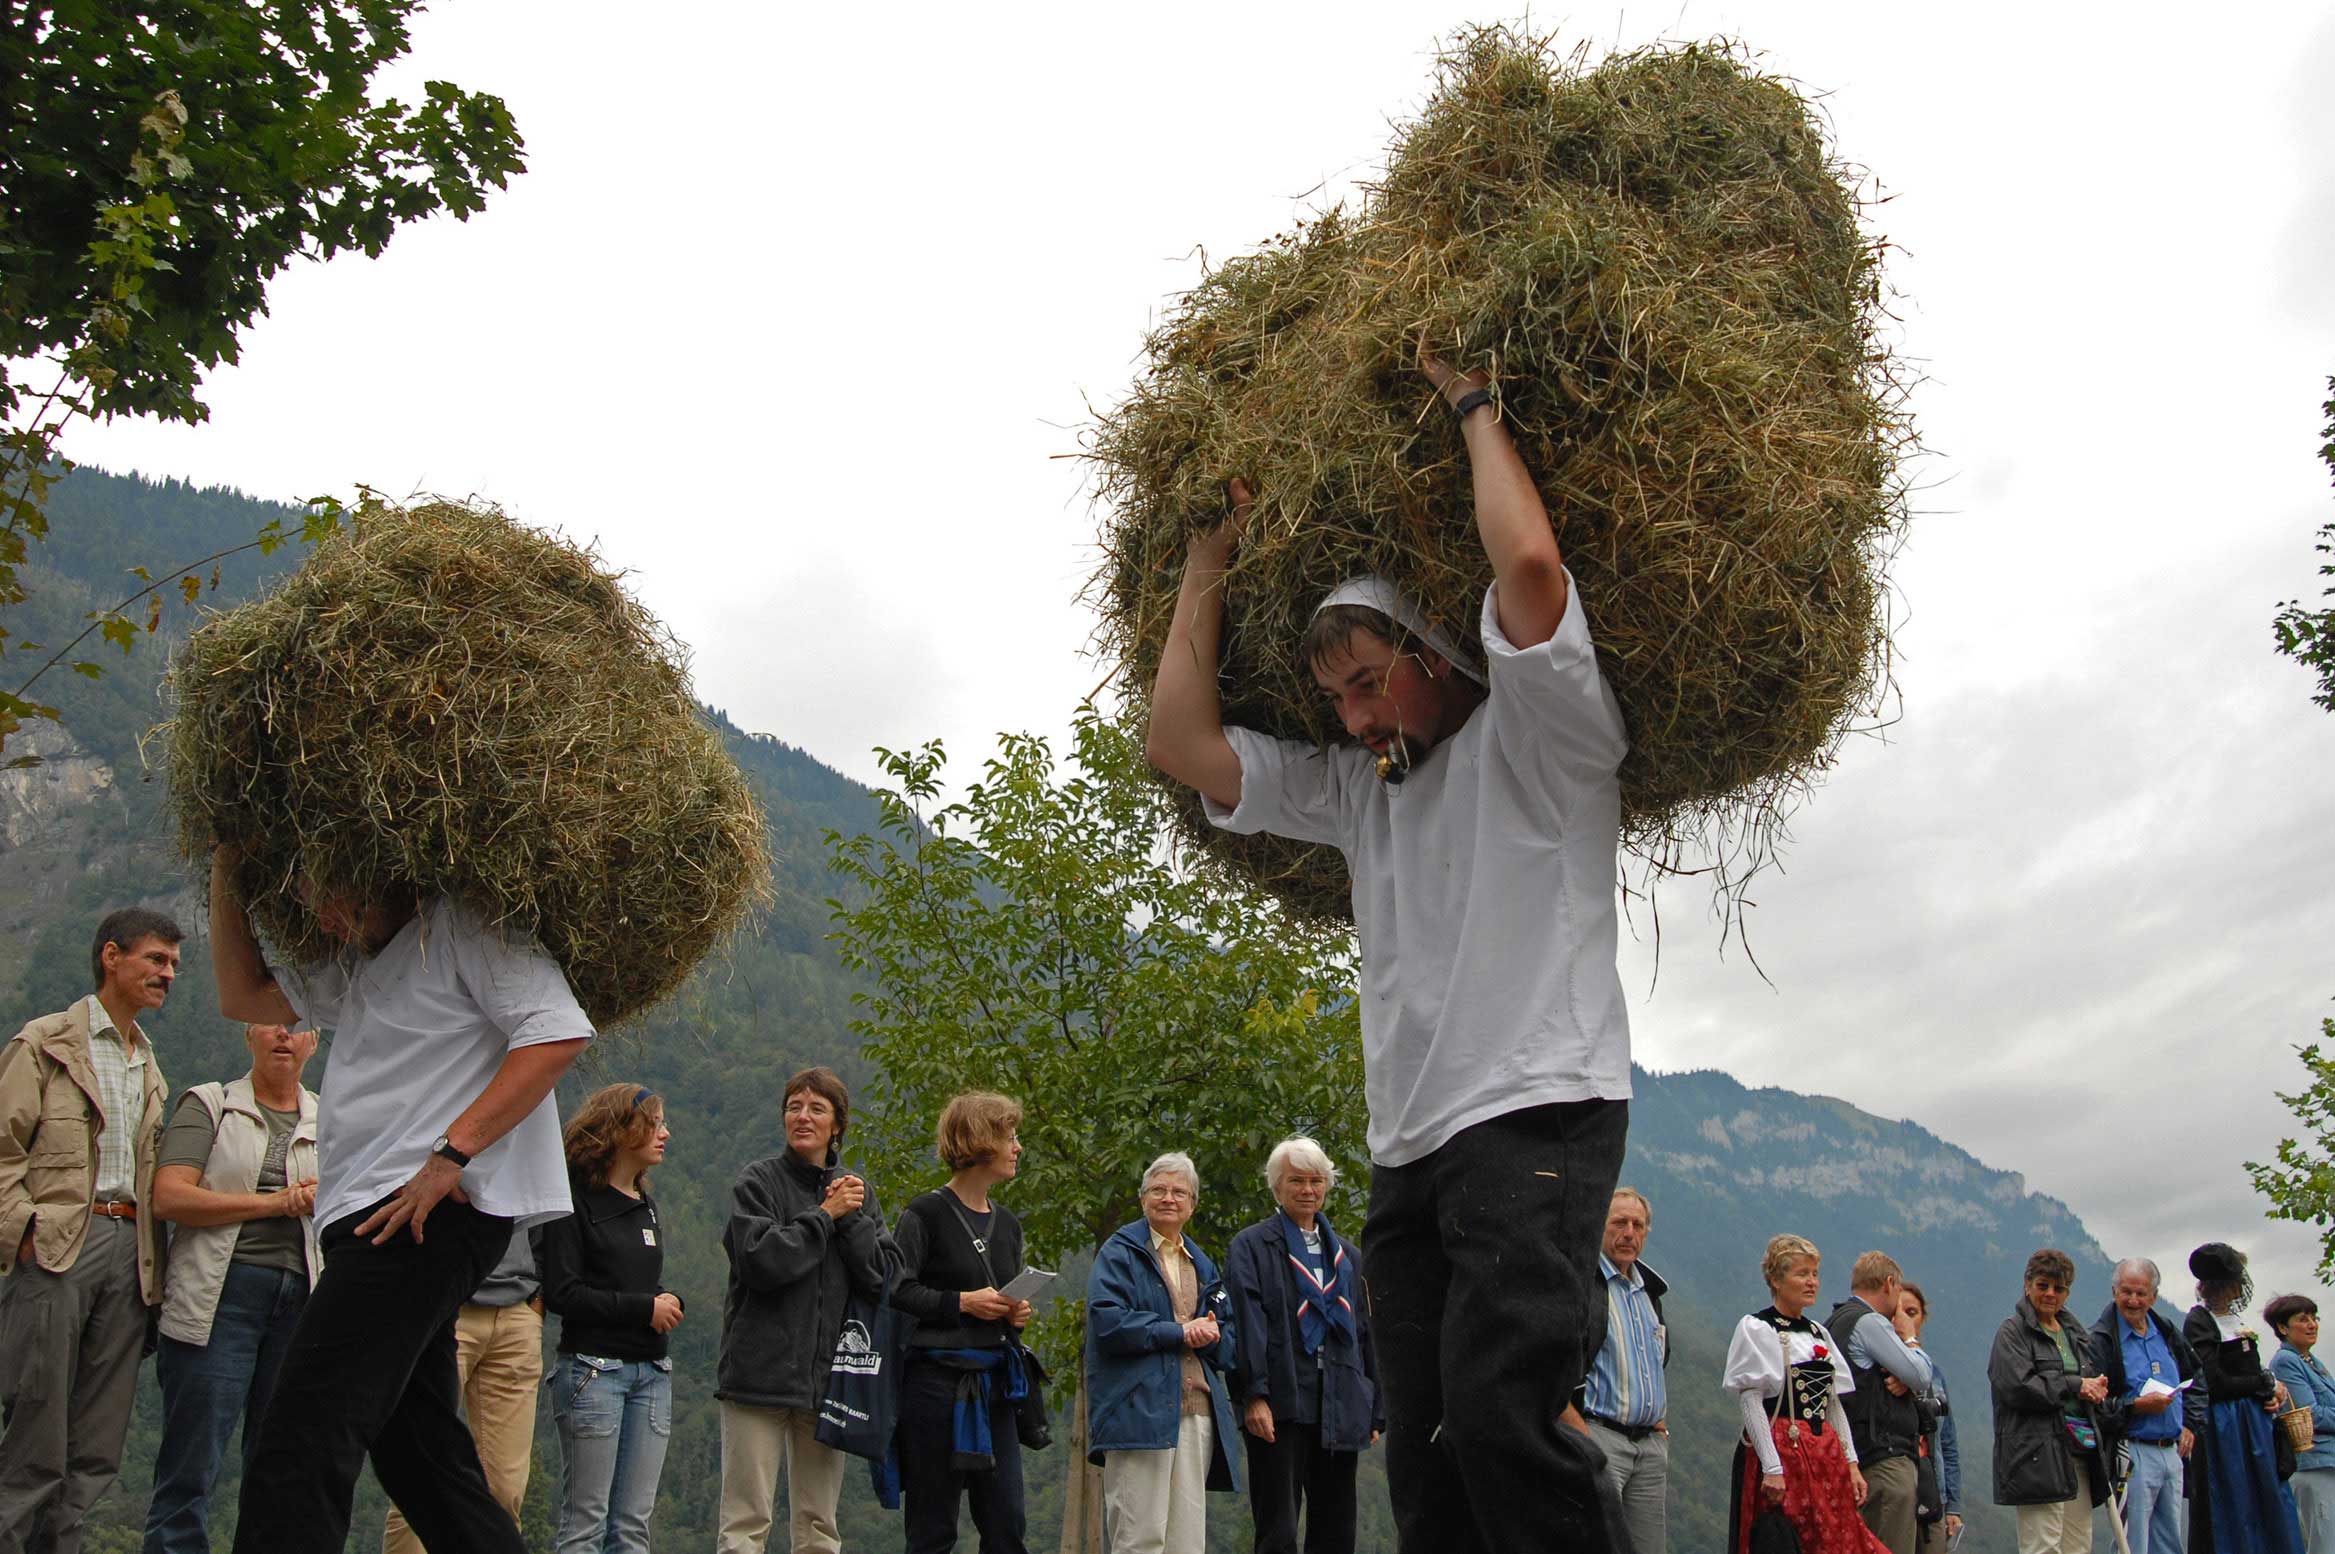 Wild haymakers taking part in the procession at the 2006 Unspunnen festival © Steiner/Verein Schweizerisches Trachten- und Alphirtenfest Unspunnen